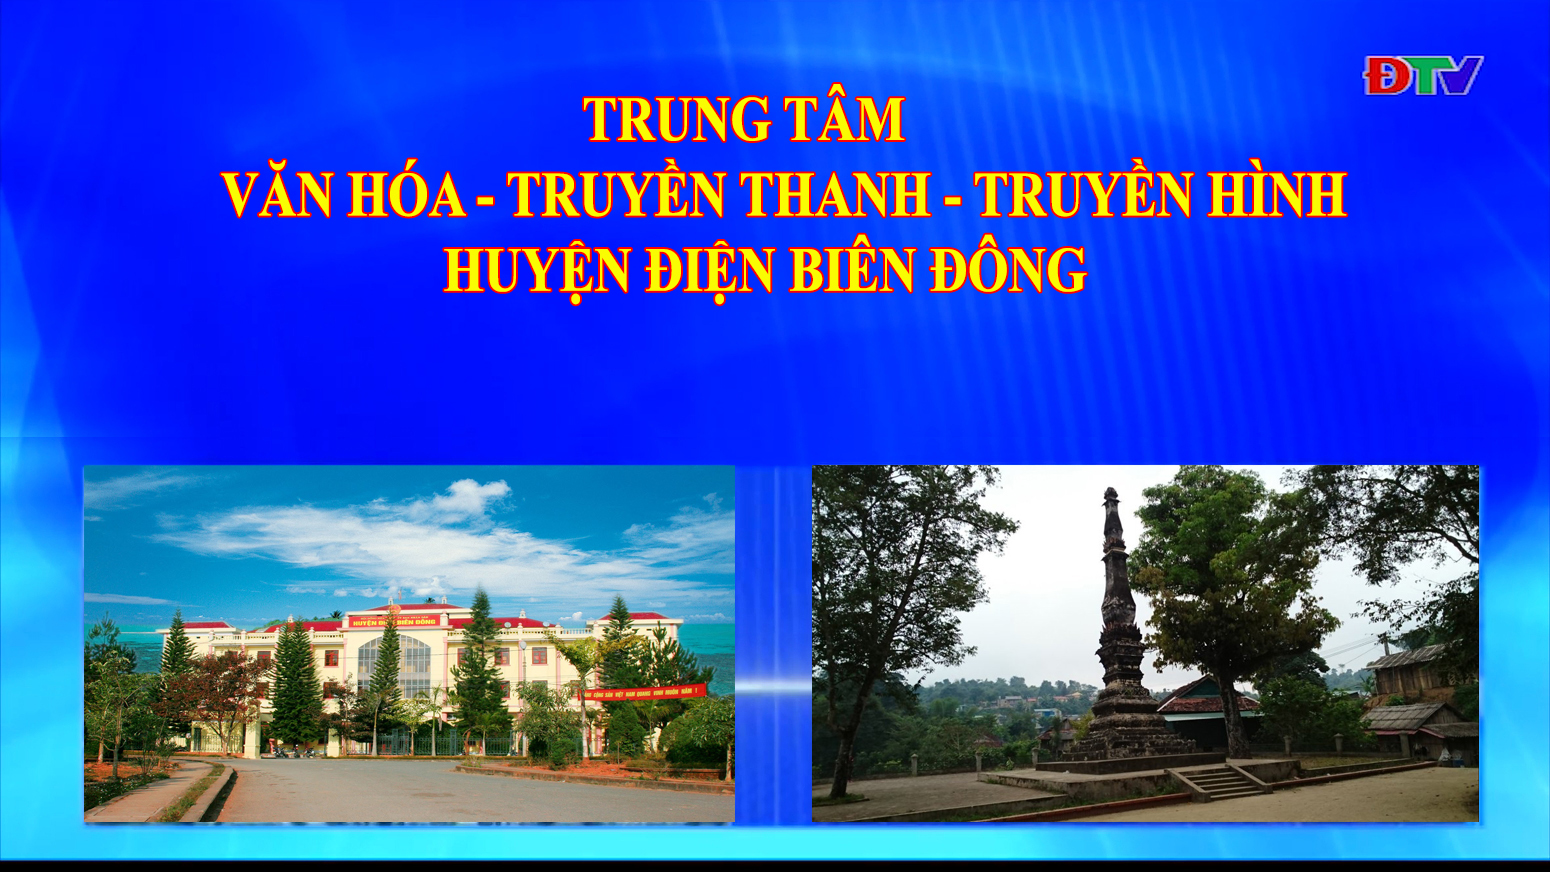 Trung tâm VH-TTTH huyên Điện Biên Đông (Ngày 3-10-2020)